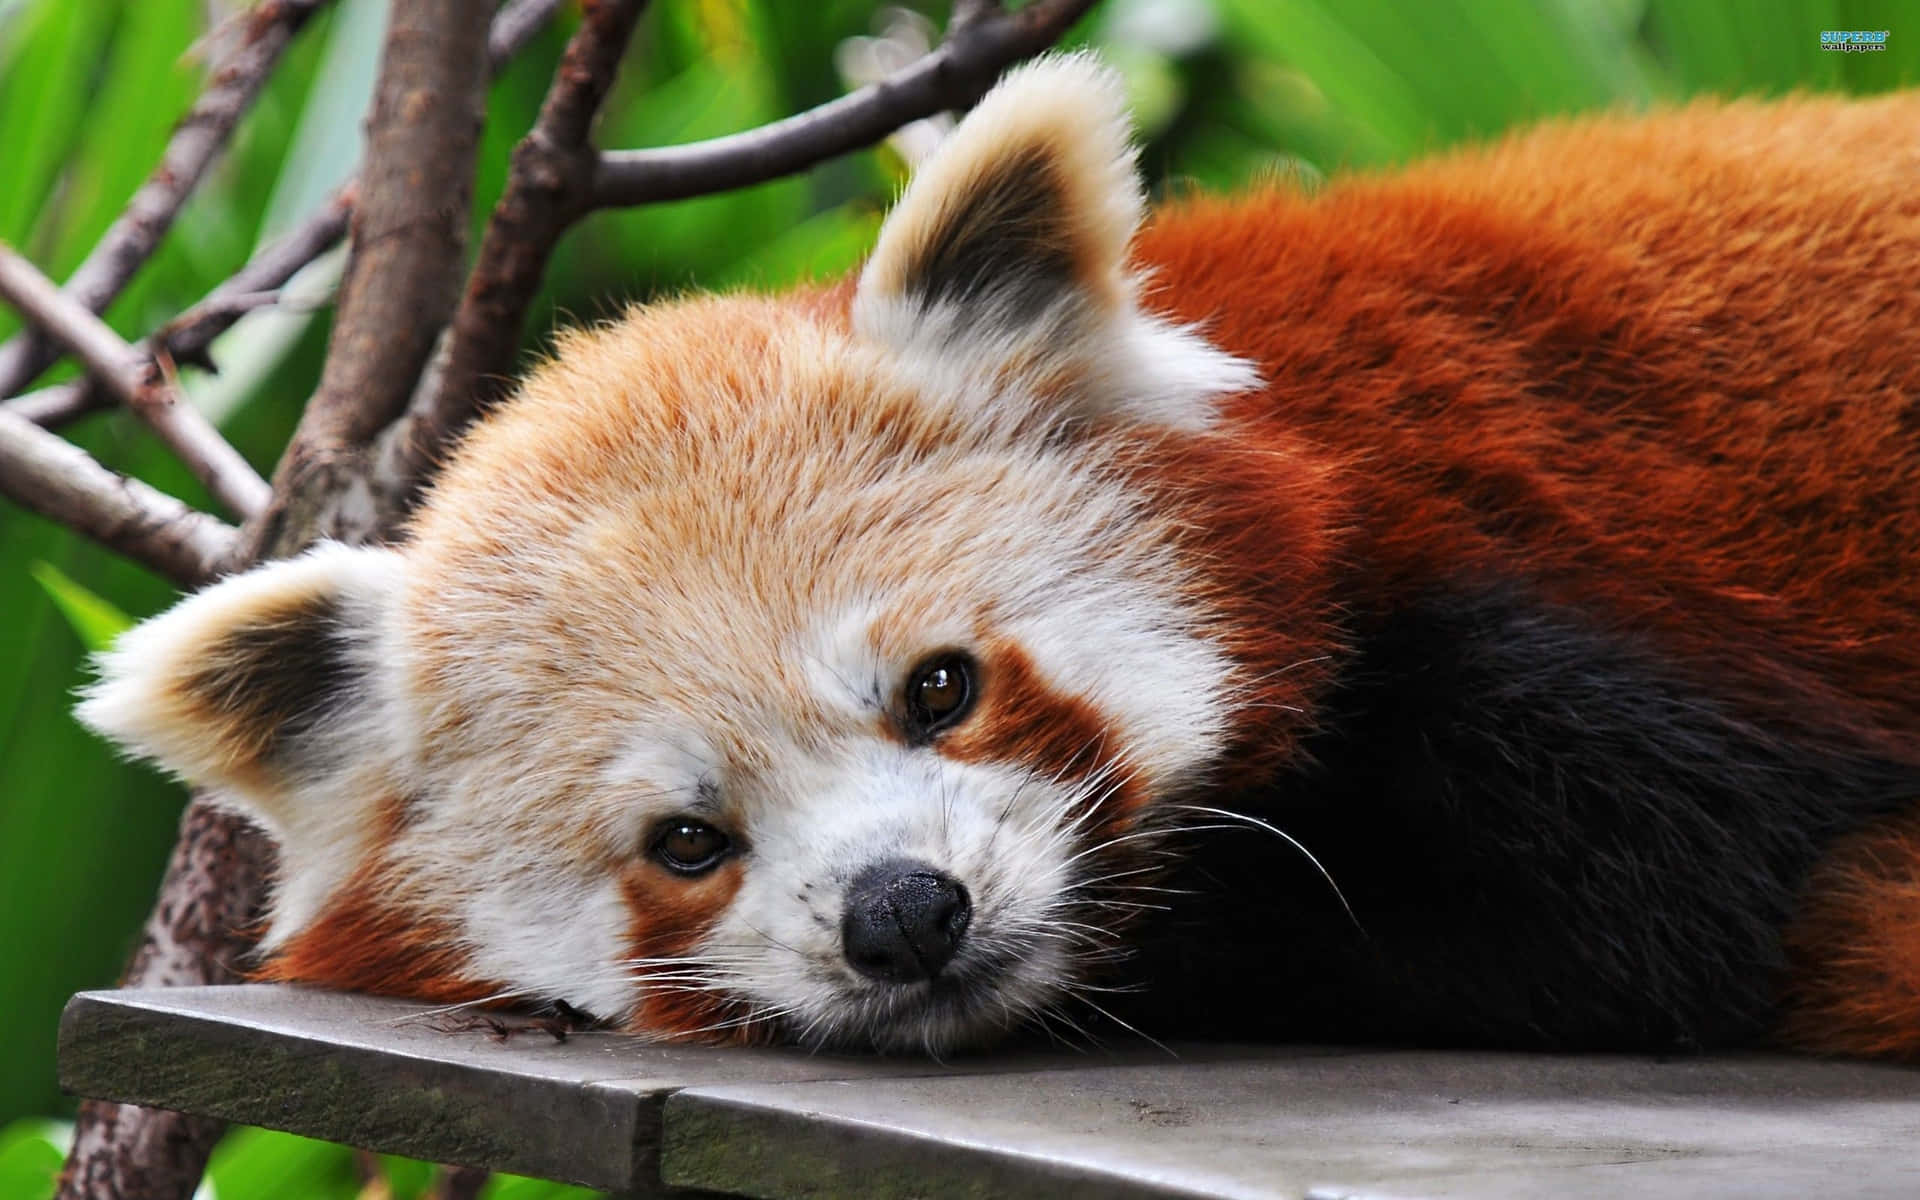 red panda wallpaper 1080p